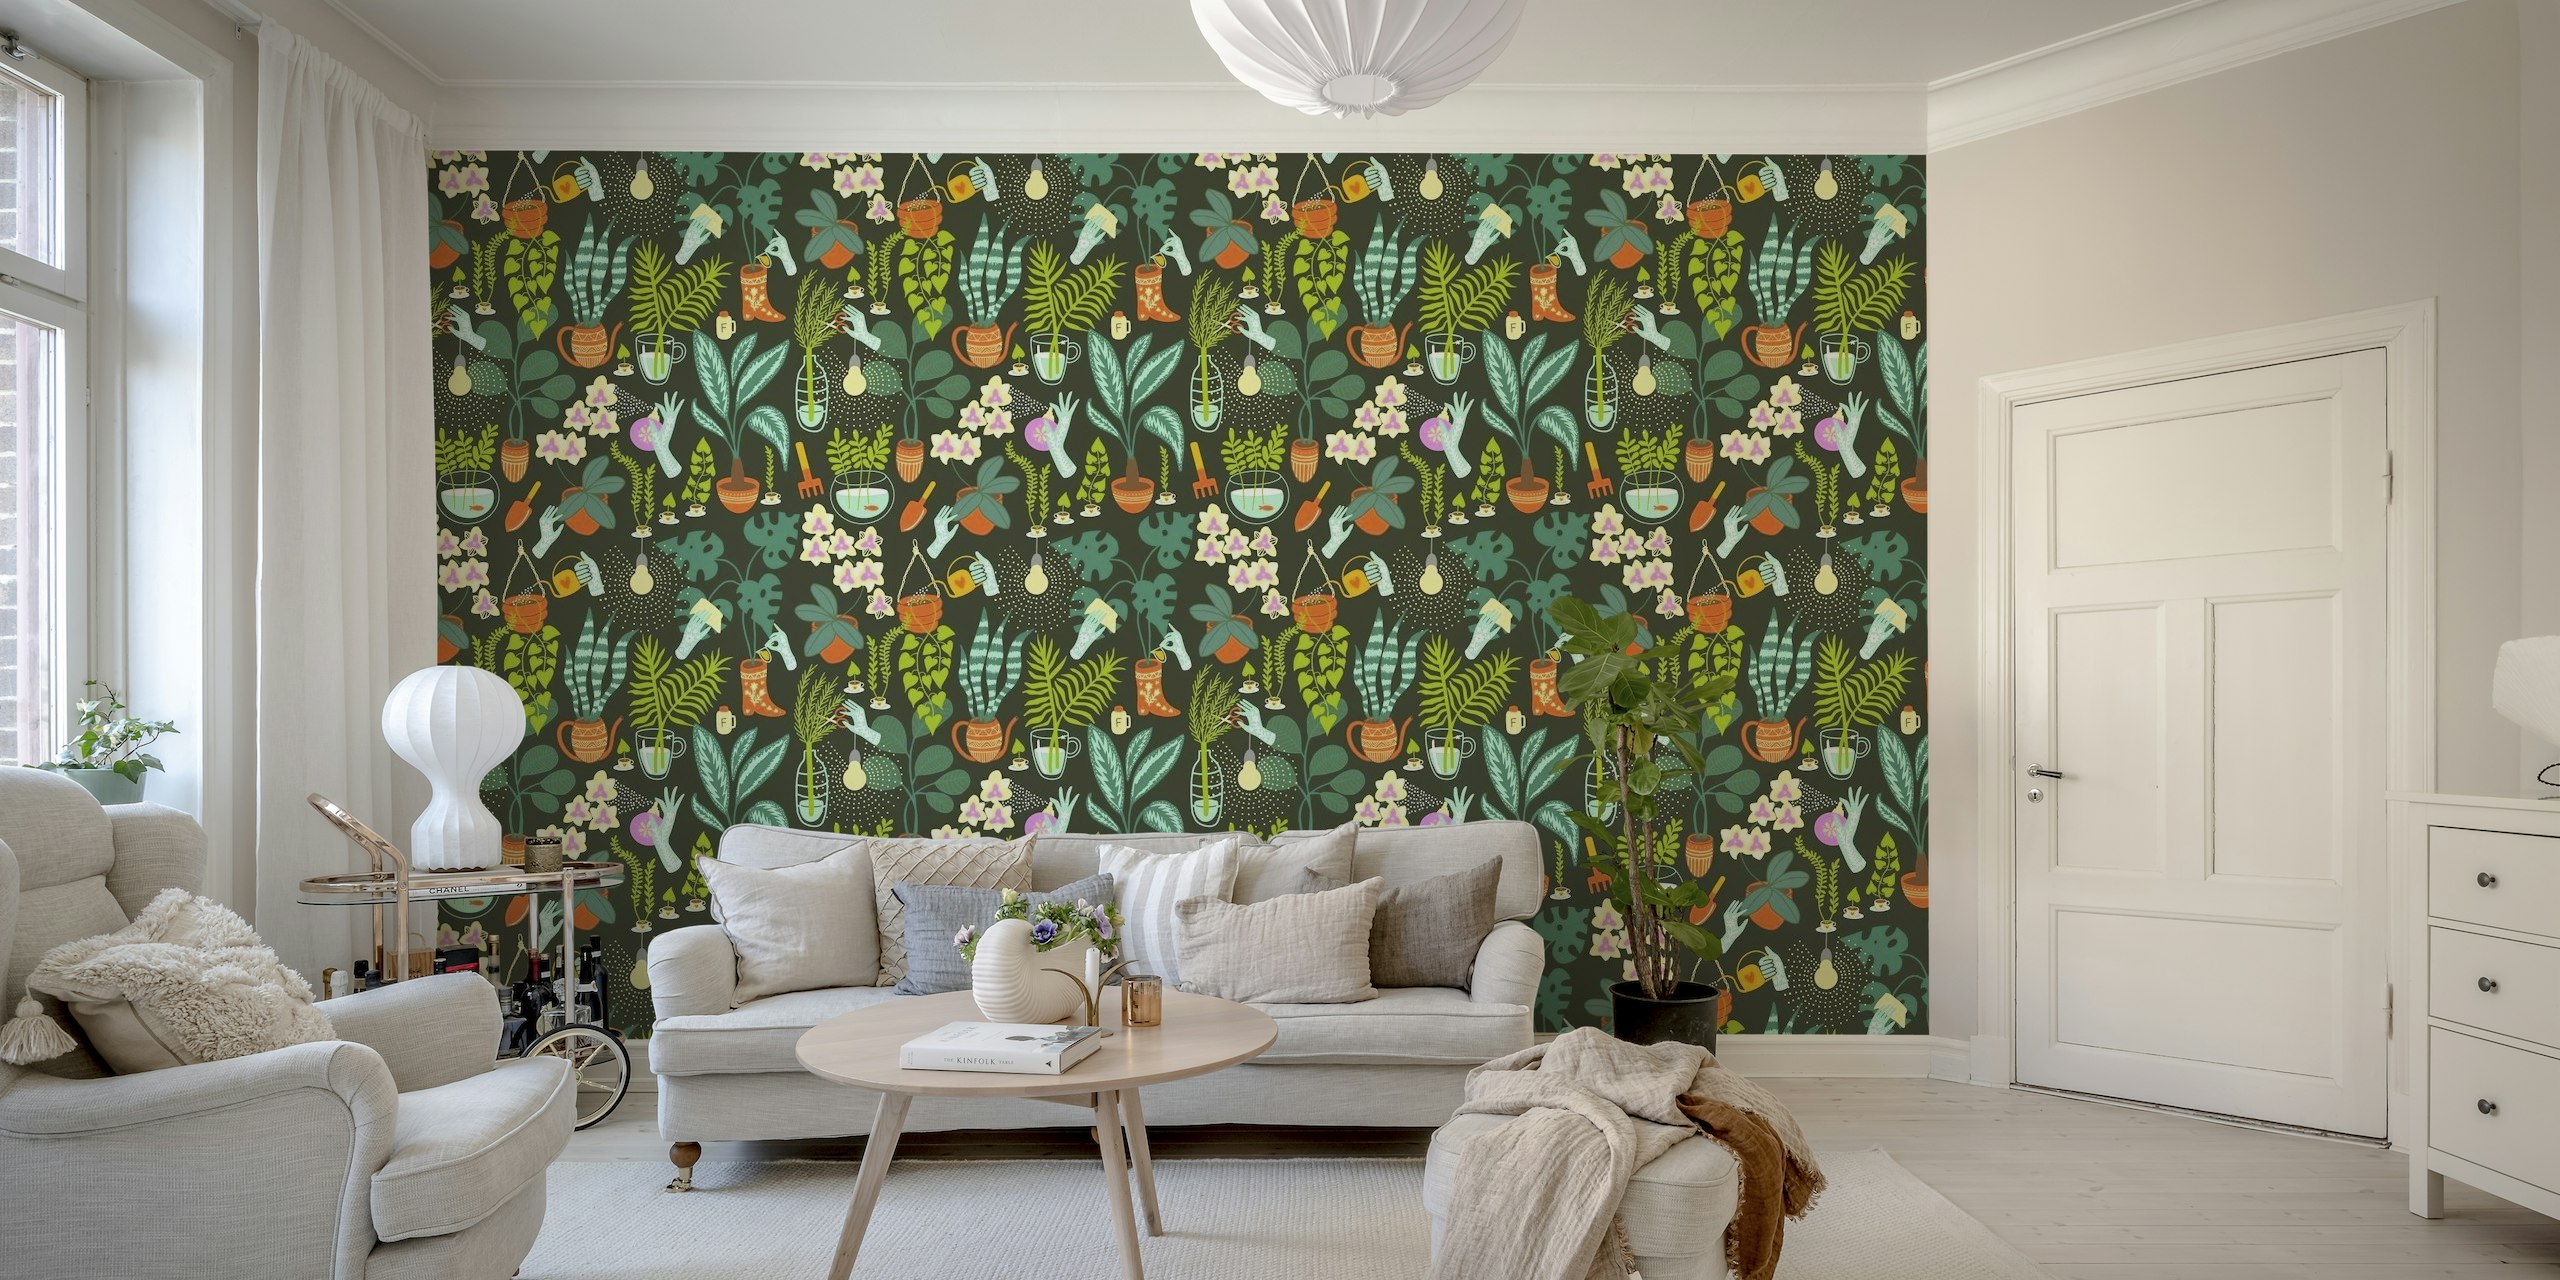 Vægmaleri med botanisk tema med forskellige indendørs planter og haveelementer